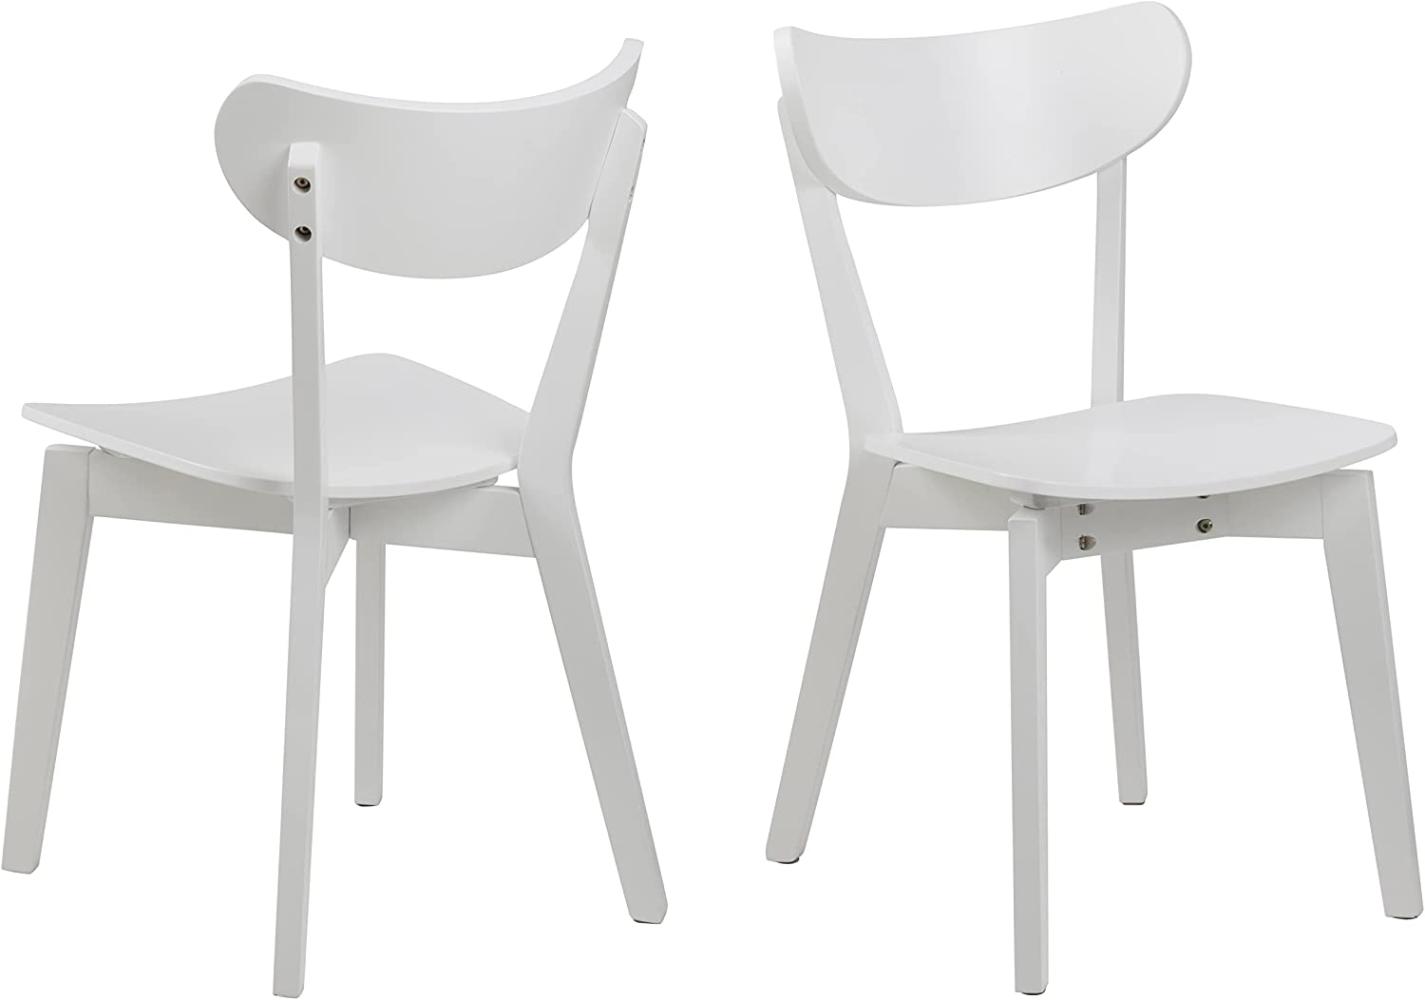 AC Design Furniture Roxanne Esszimmerstühle 2er Set, H: 79,5 x B: 45 x T: 55 cm, Weiß, Holz, 2 Stk. Bild 1